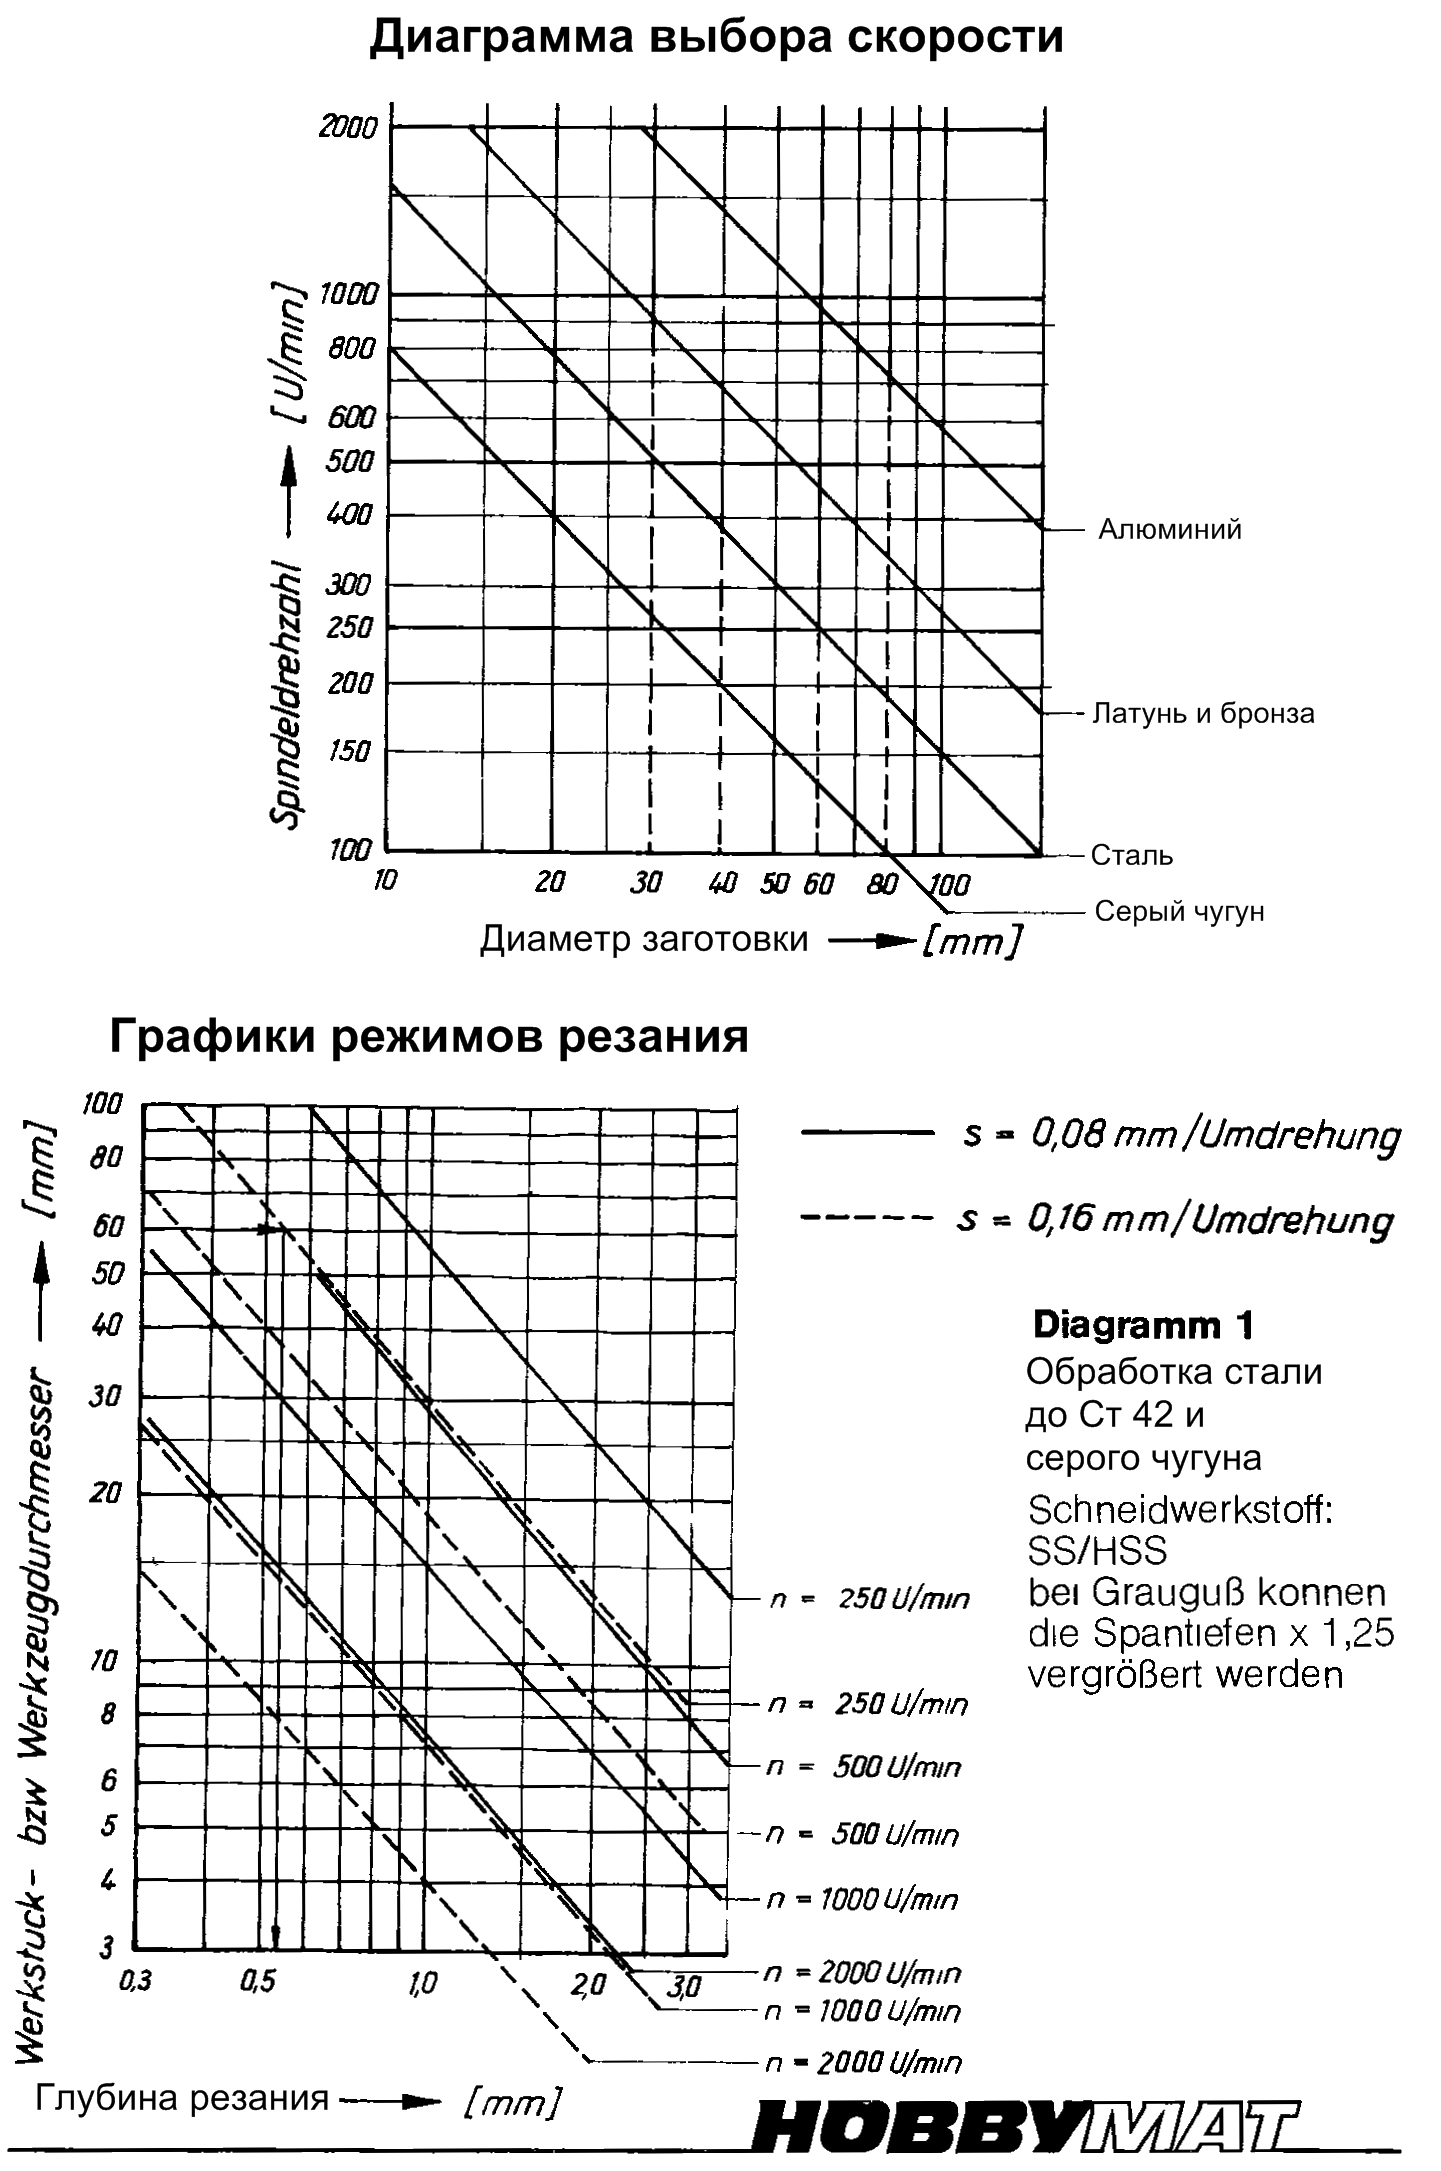 Пример графиков для подбора режимов резания